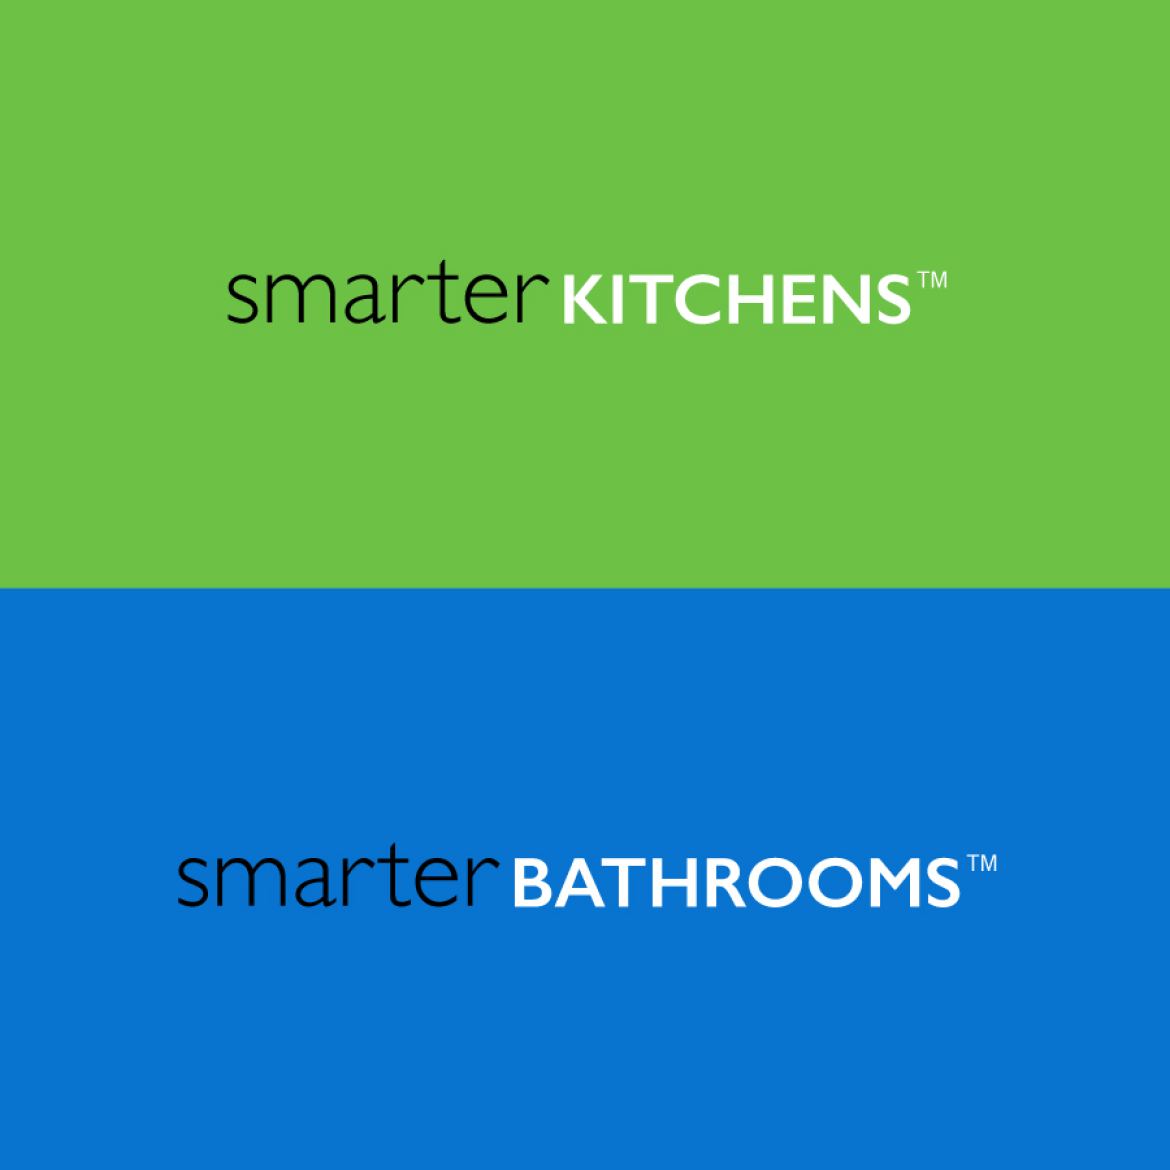 Smarter Kitchens Smarter Bathrooms - Home Renovation